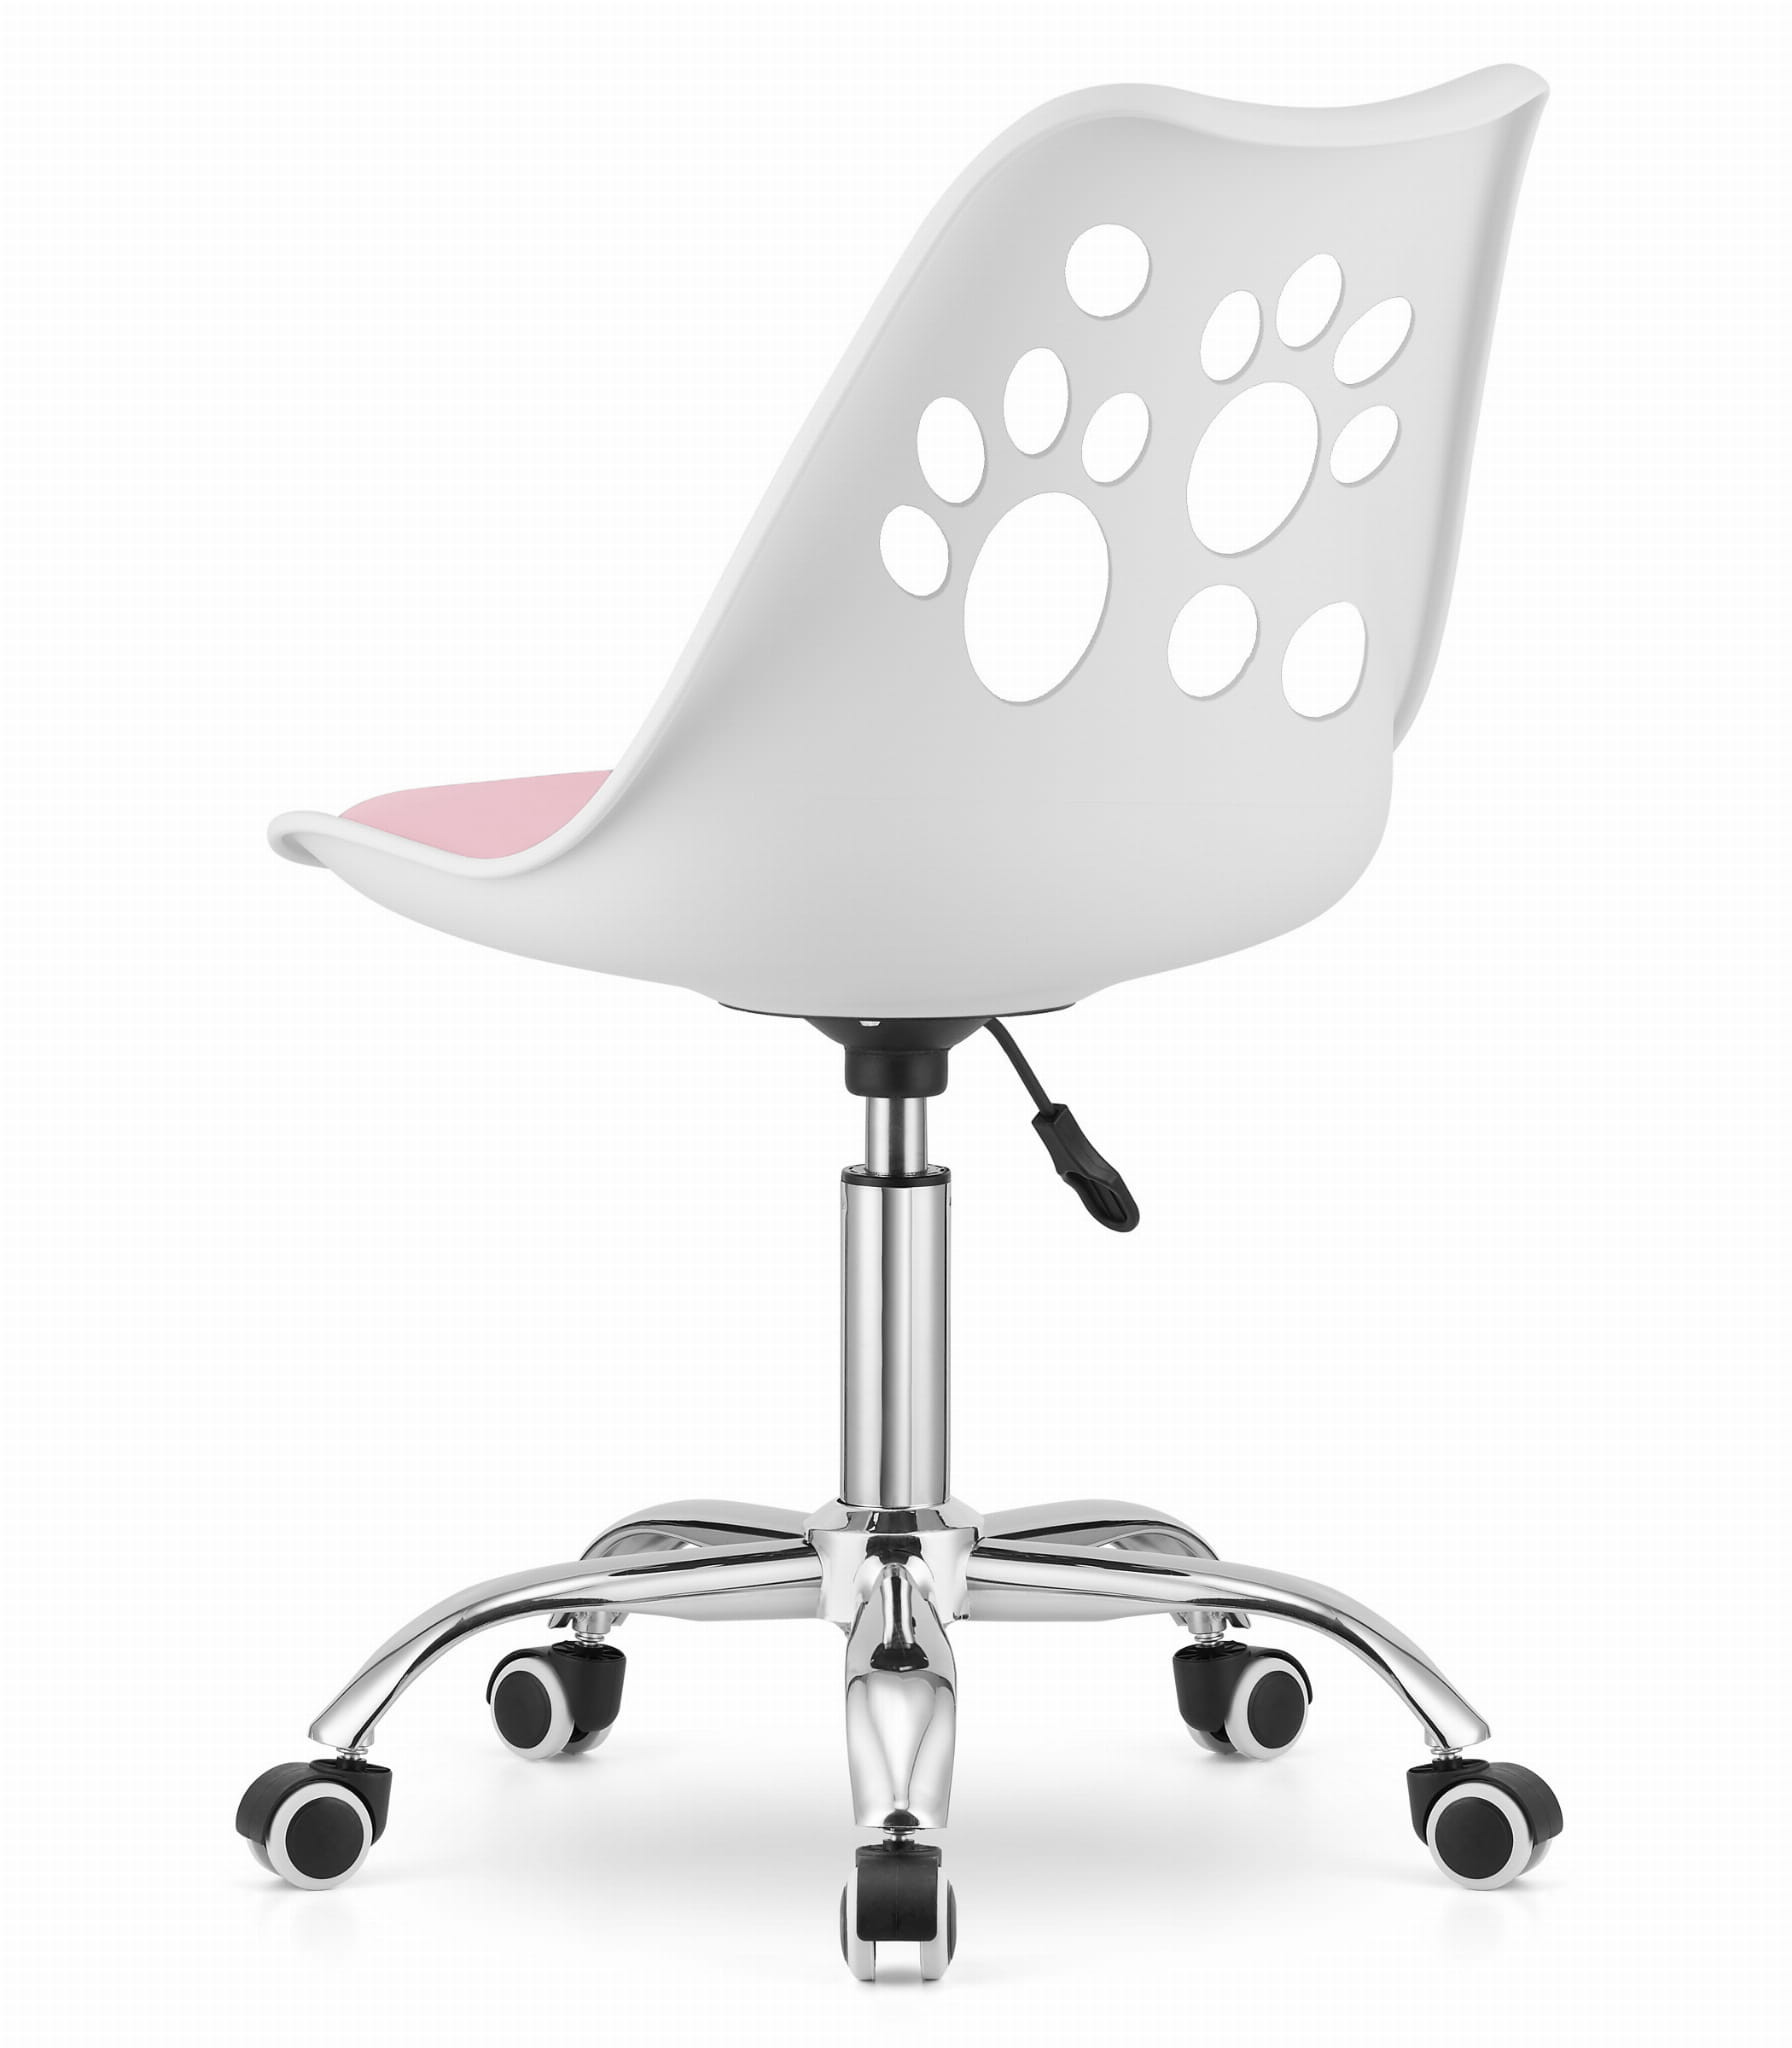 Otočná židle PRINT - bílo/růžová